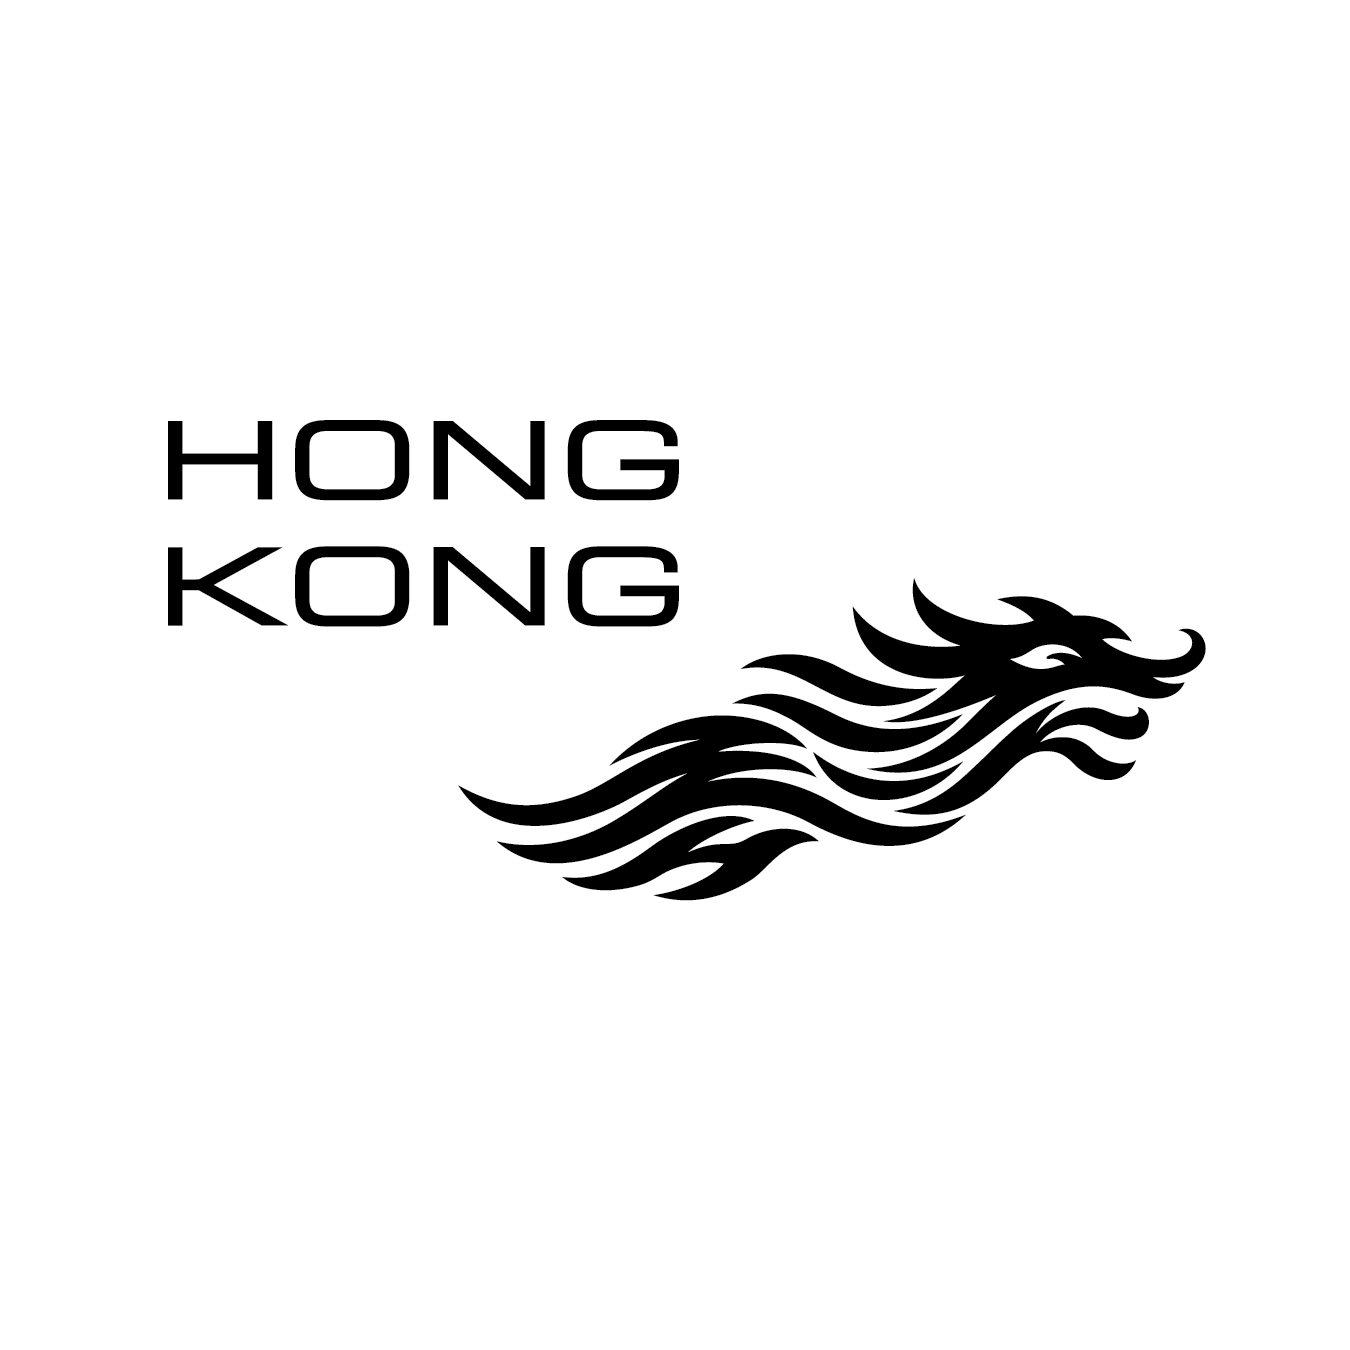 HK.png